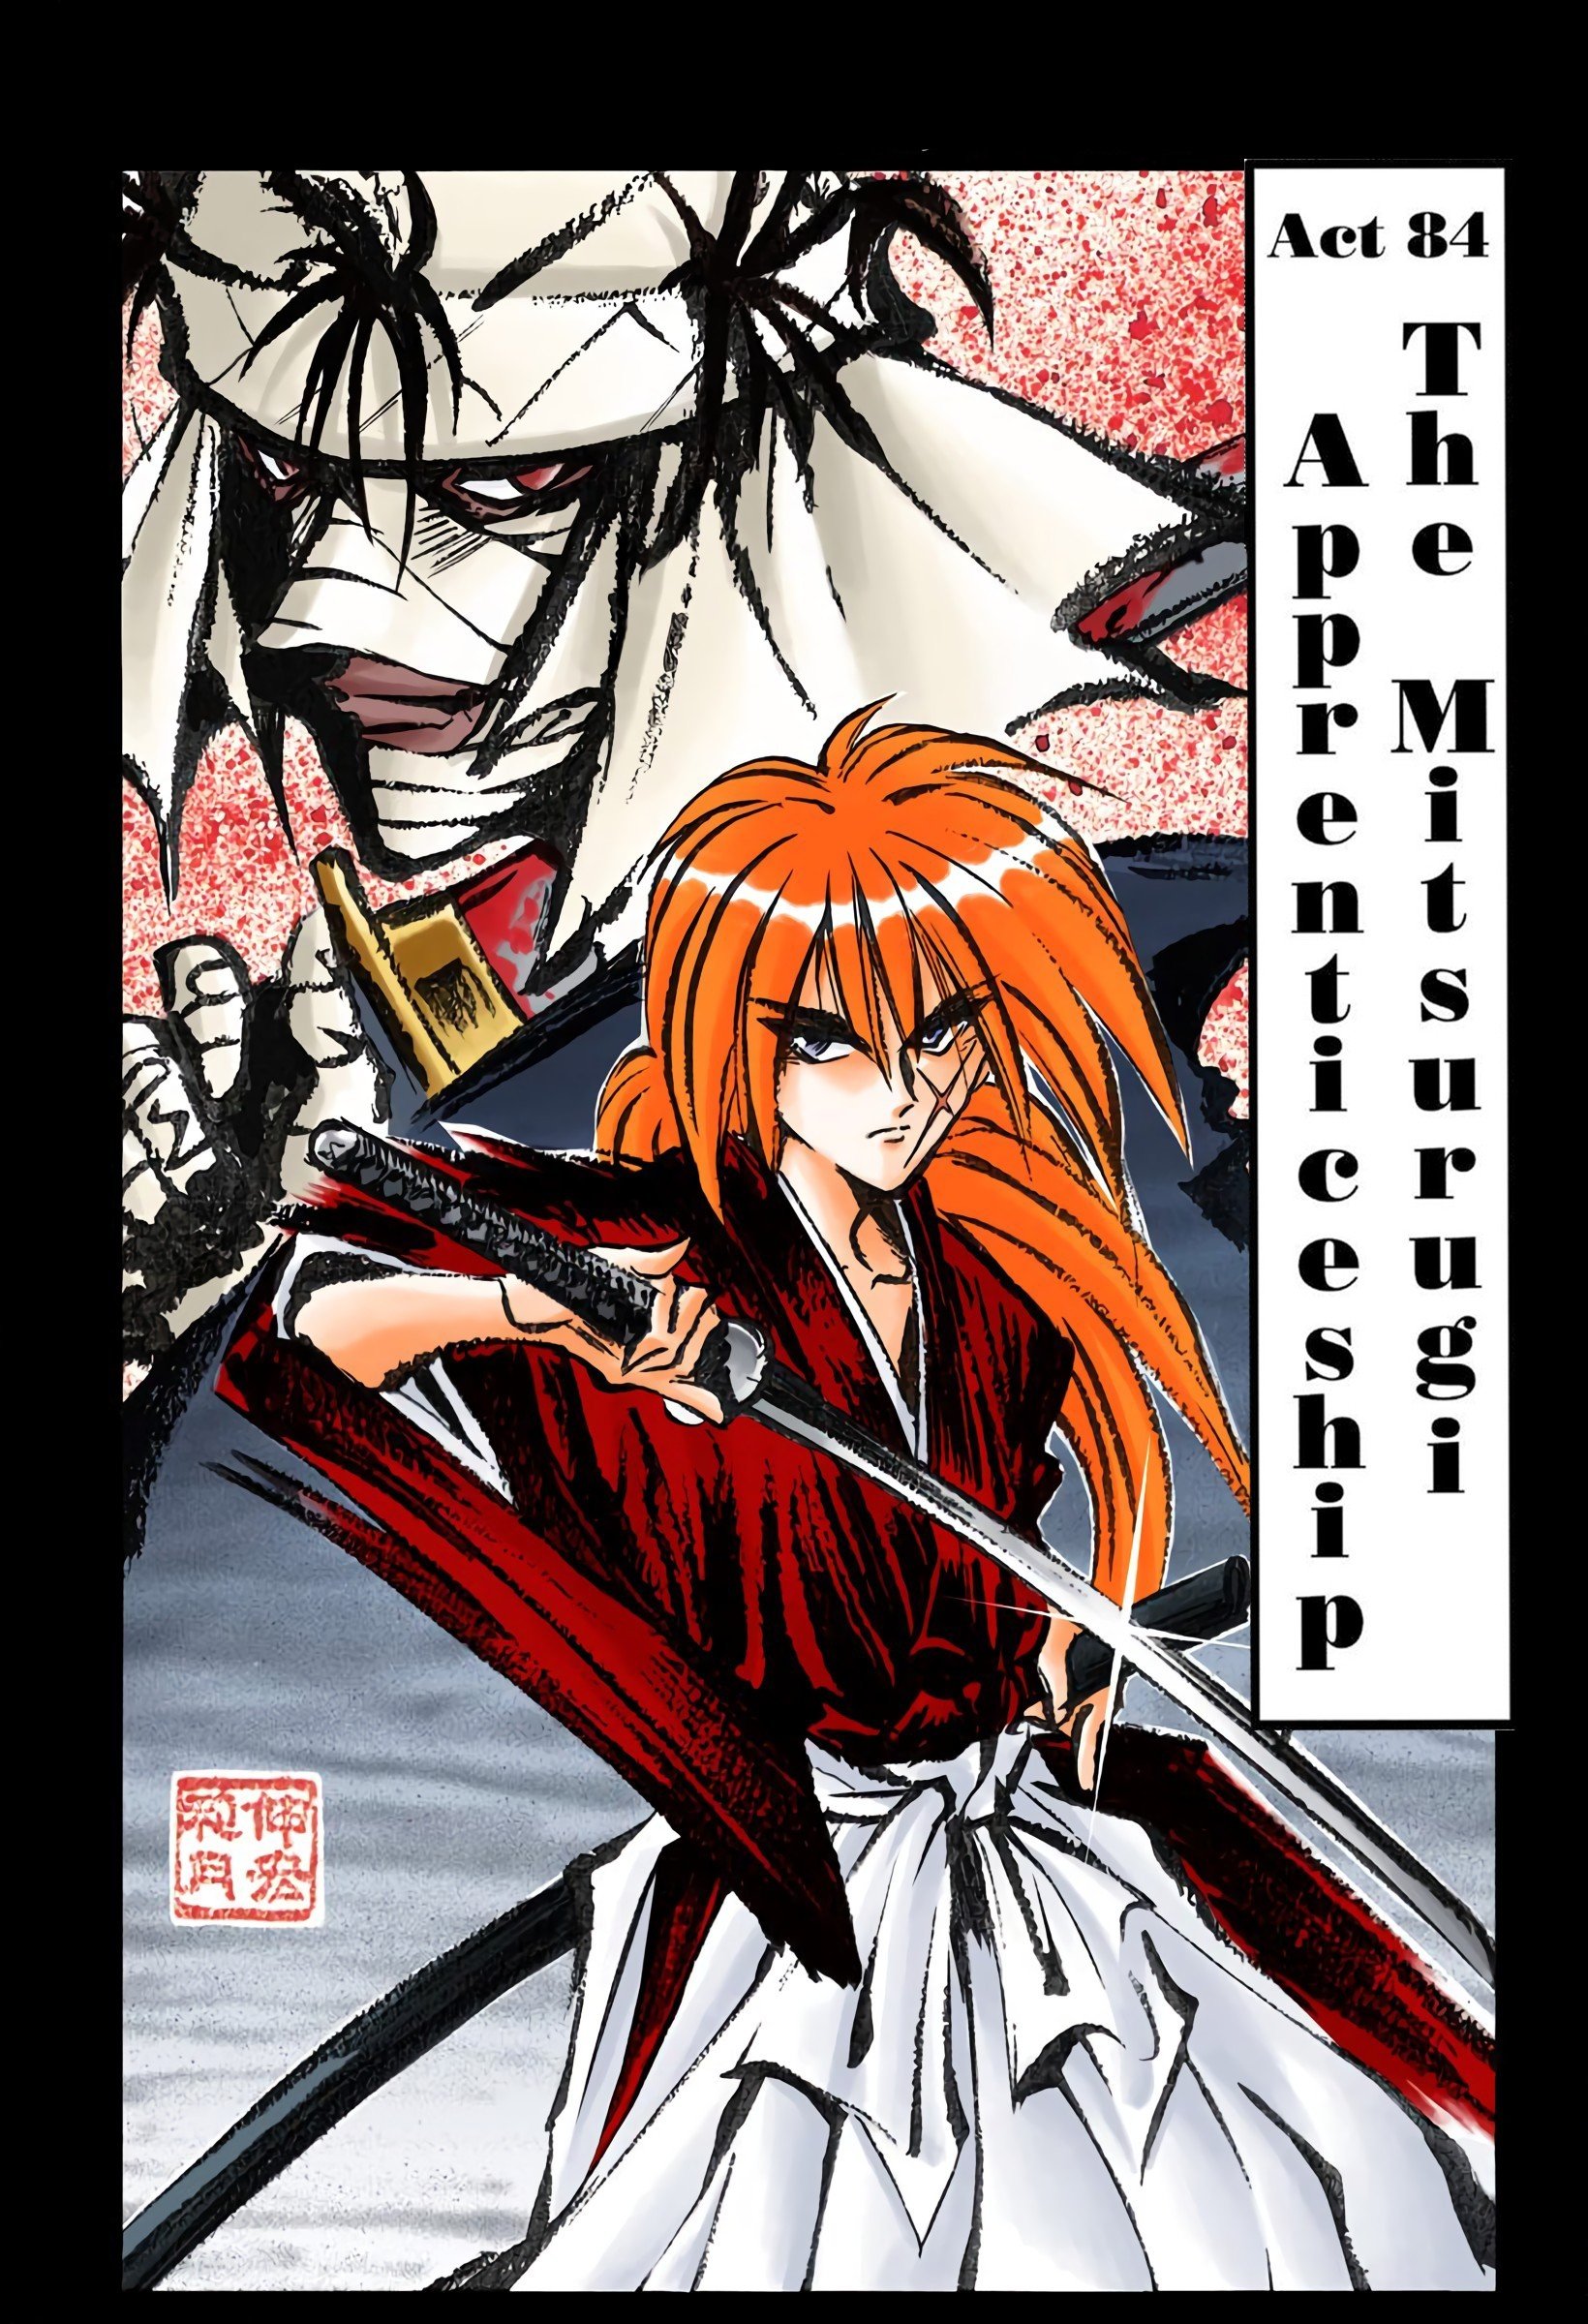 Kenshin Himura new illustration : r/rurounikenshin